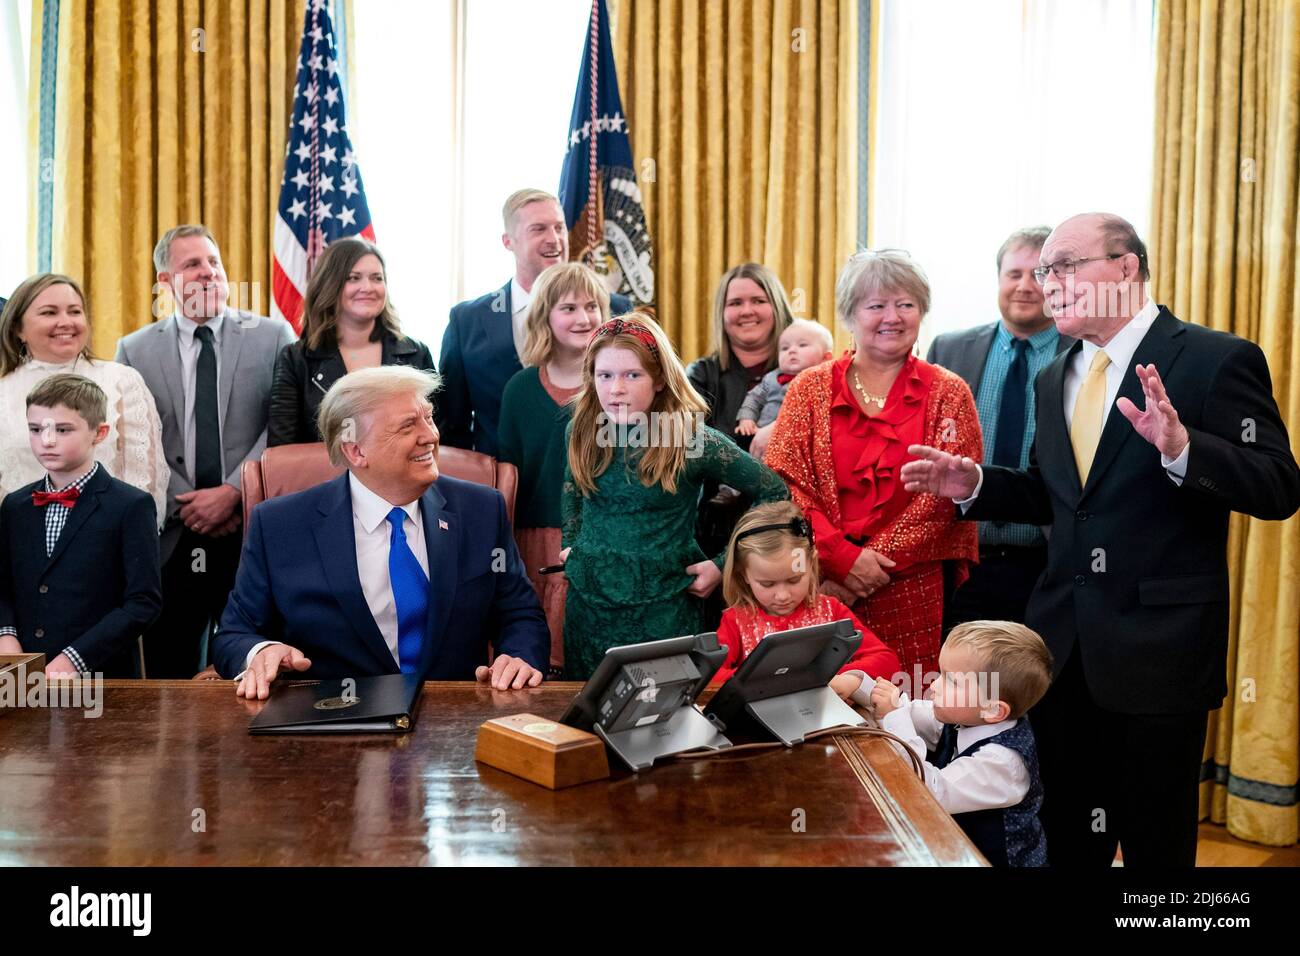 Dan Gable, campione olimpico di wrestling, destra, e famiglia si riuniscono intorno al presidente Donald Trump per una foto dopo la presentazione della Medaglia di libertà nell'Ufficio ovale della Casa Bianca 7 dicembre 2020 a Washington, D.C. Foto Stock